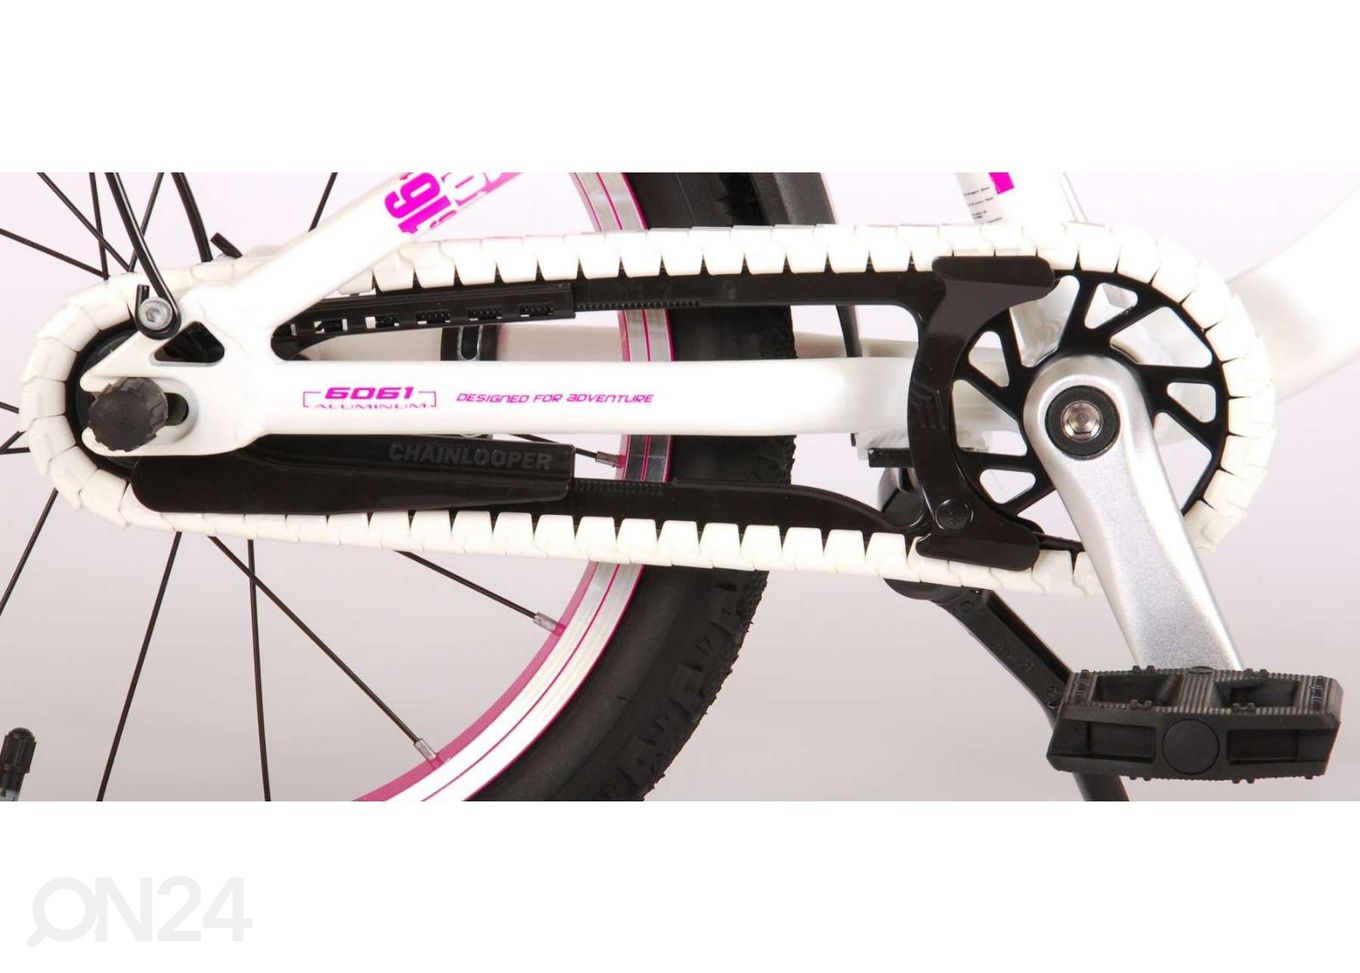 Велосипед для девочек 16 дюймов Volare Glamour Prime Collection увеличить